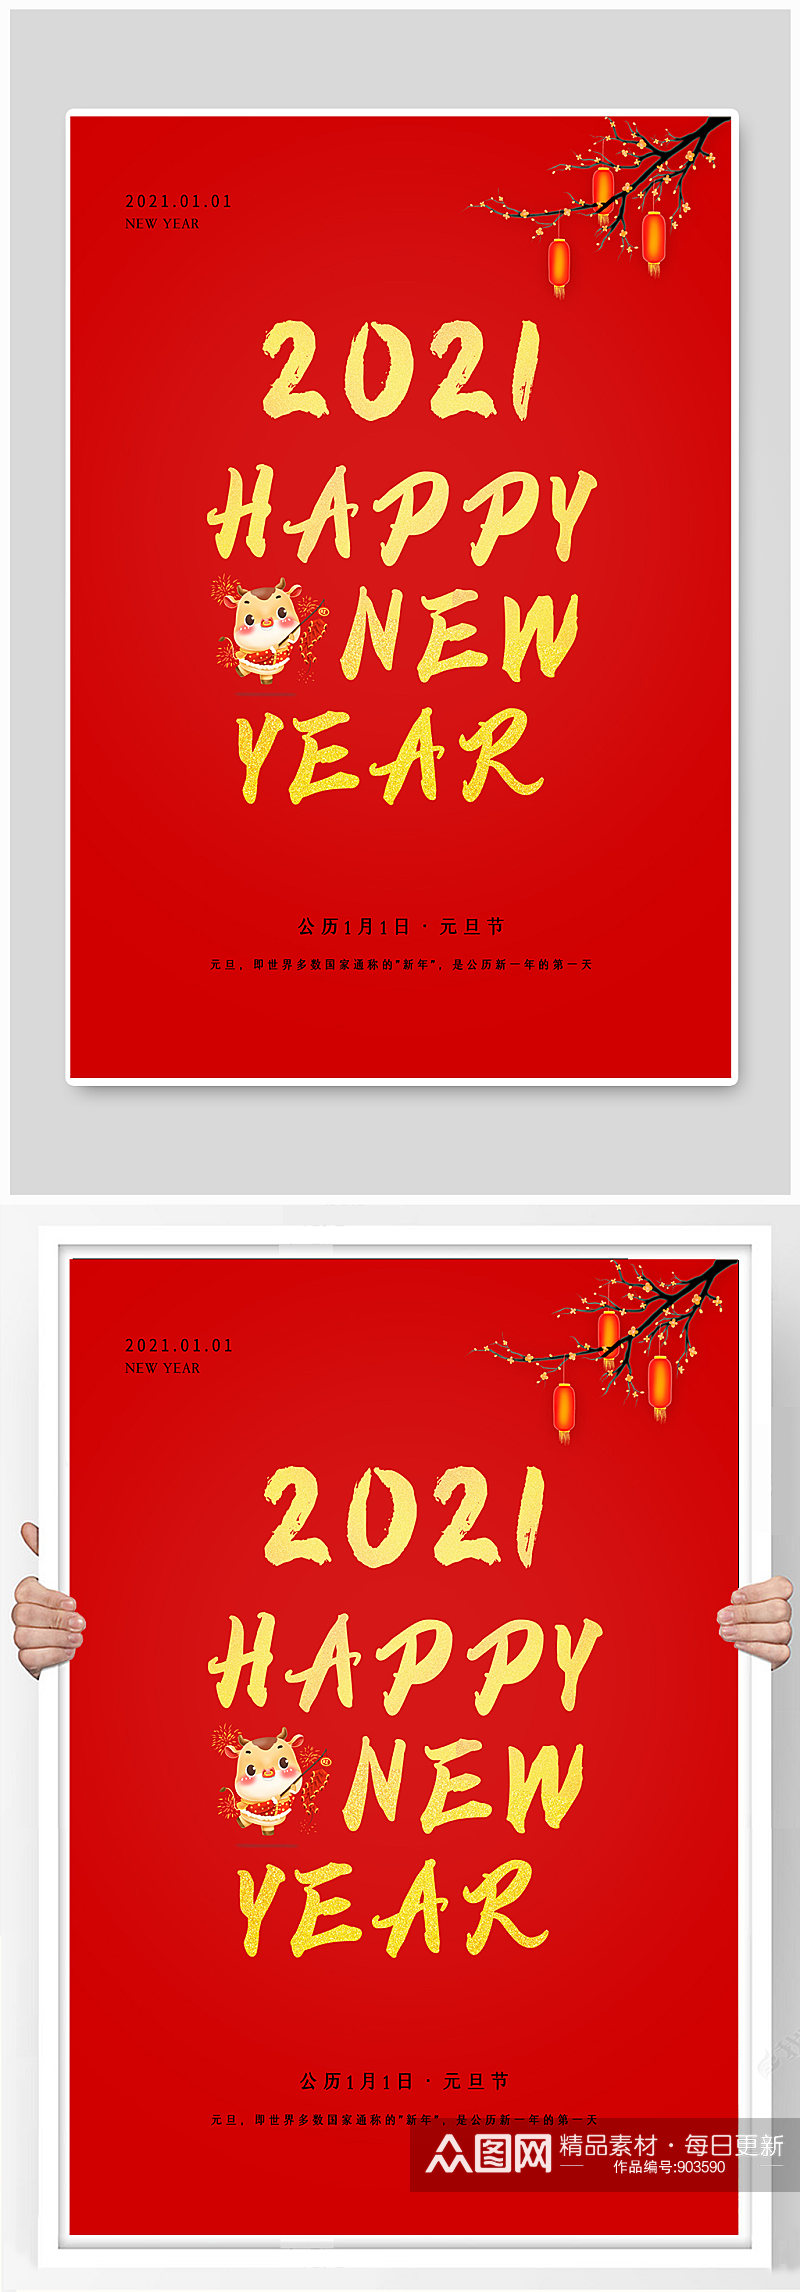 红色2021新年元旦节促销海报素材